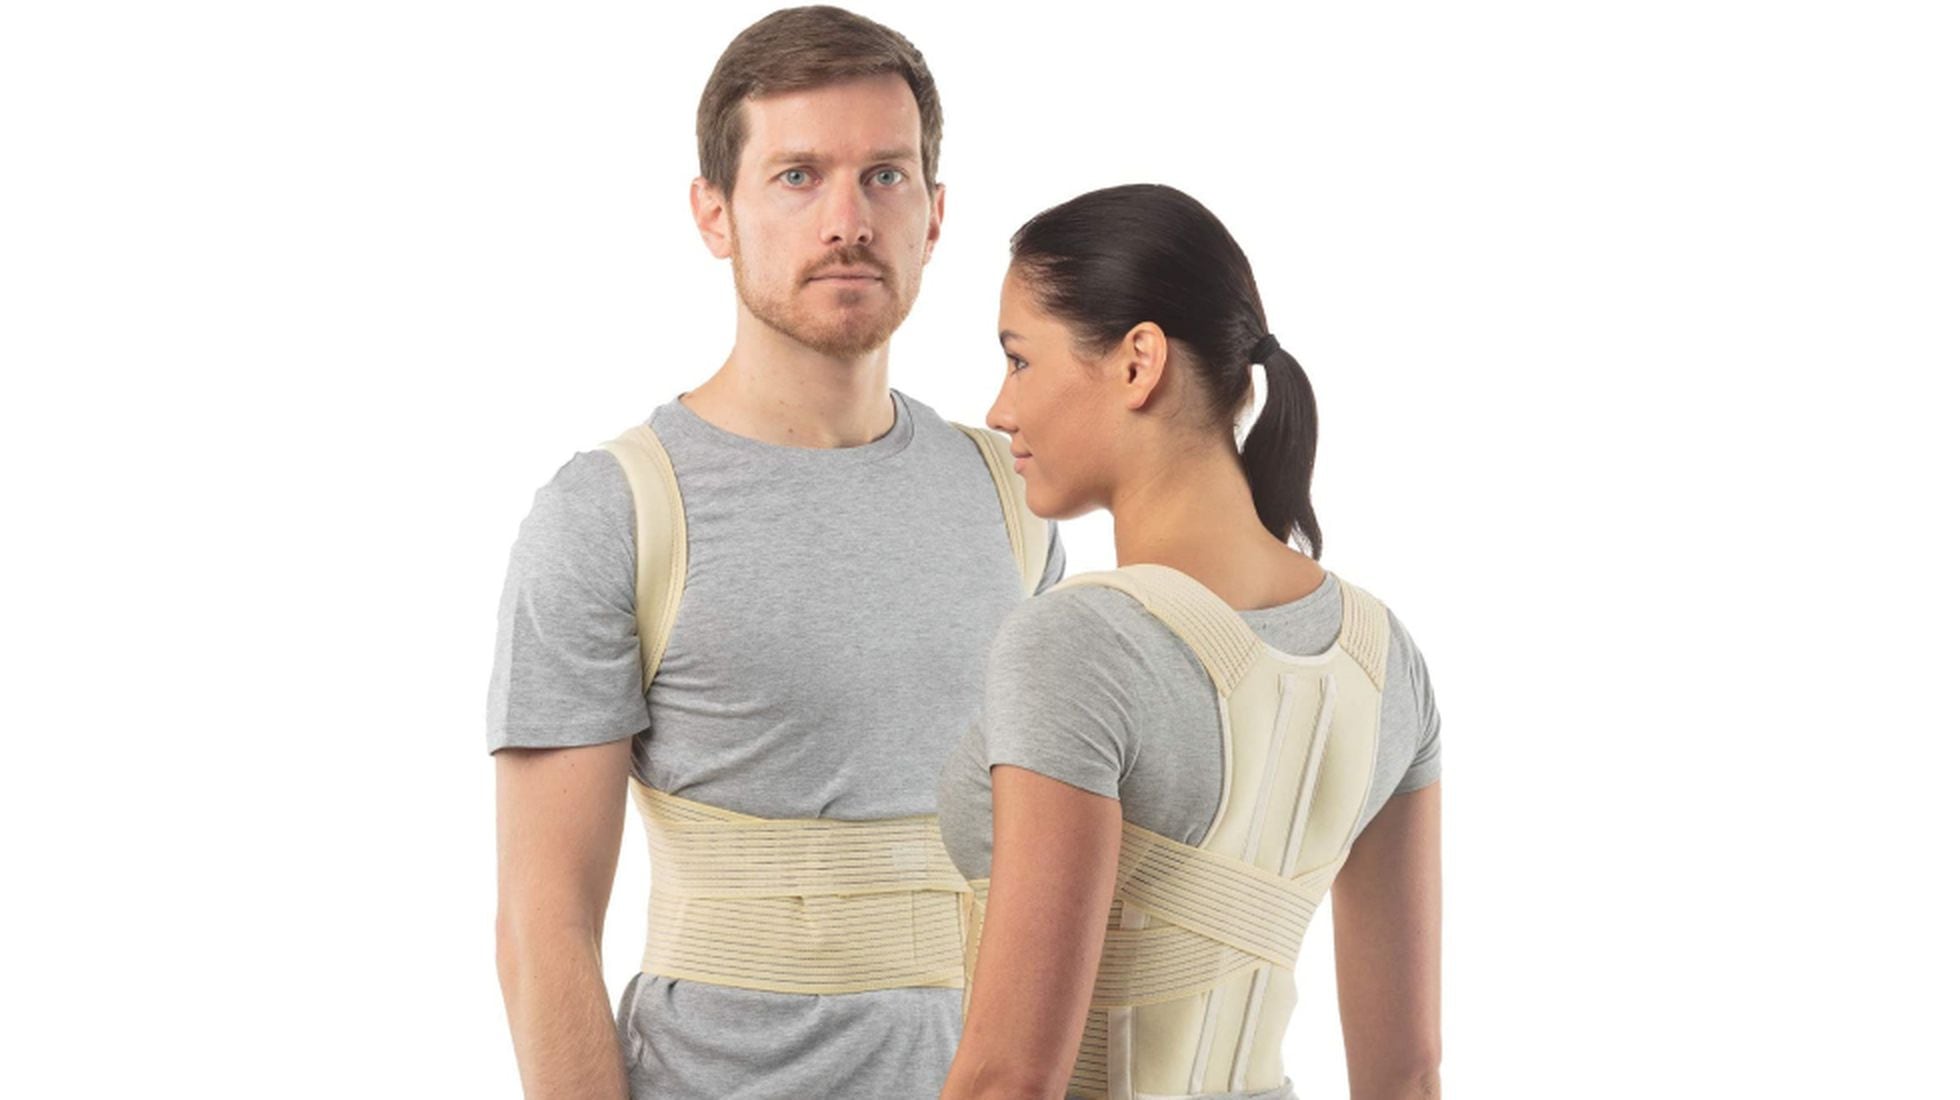 Corrector de Postura Espalda Alta Clásico - Fajas para Corregir la